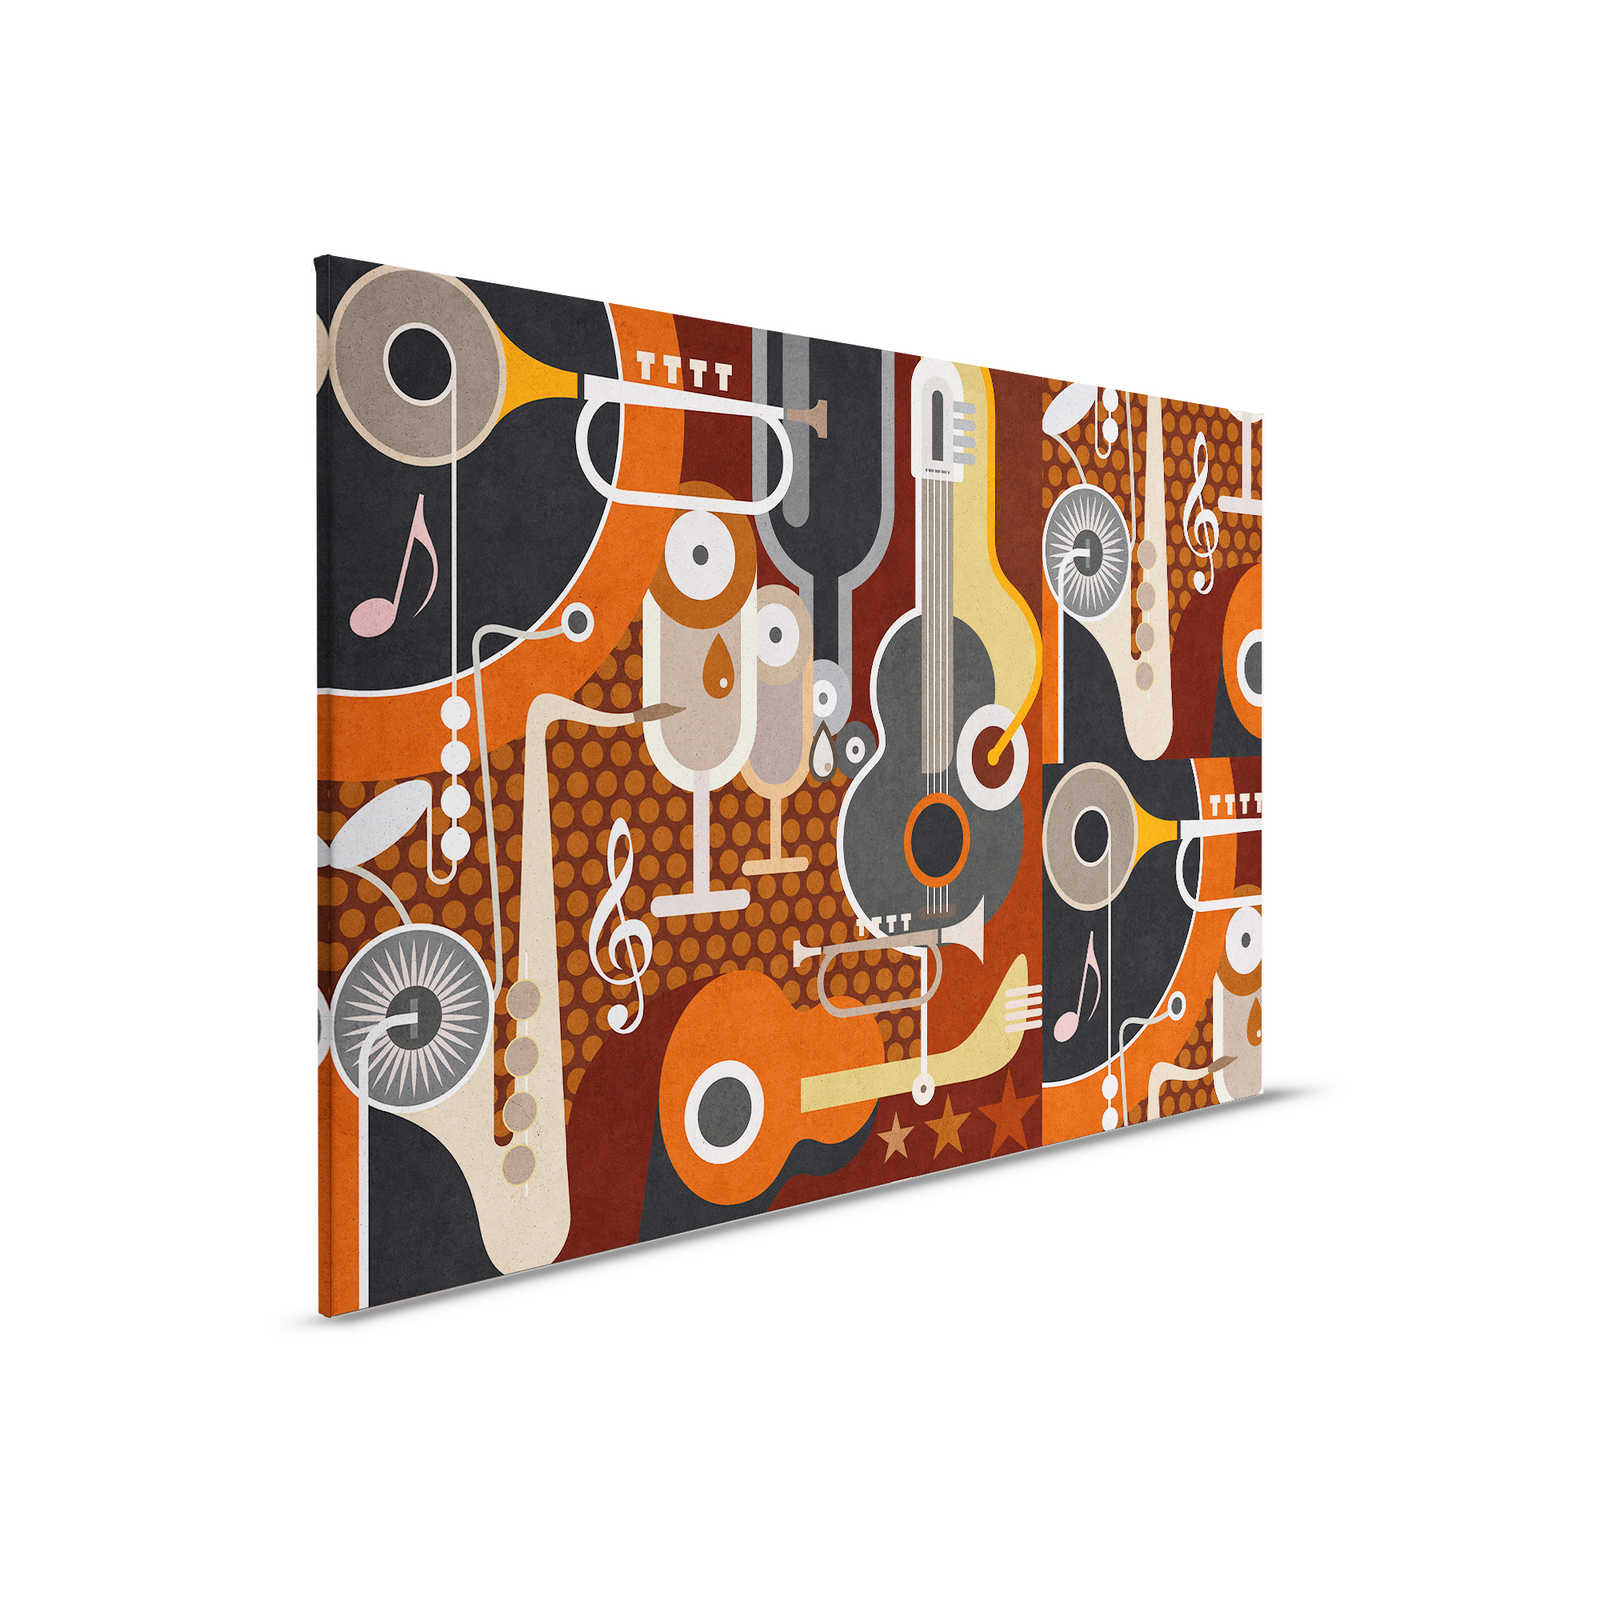         Wall of sound 1 - Leinwandbild in Beton Struktur, abstrakte Musikinstrumente – 0,90 m x 0,60 m
    